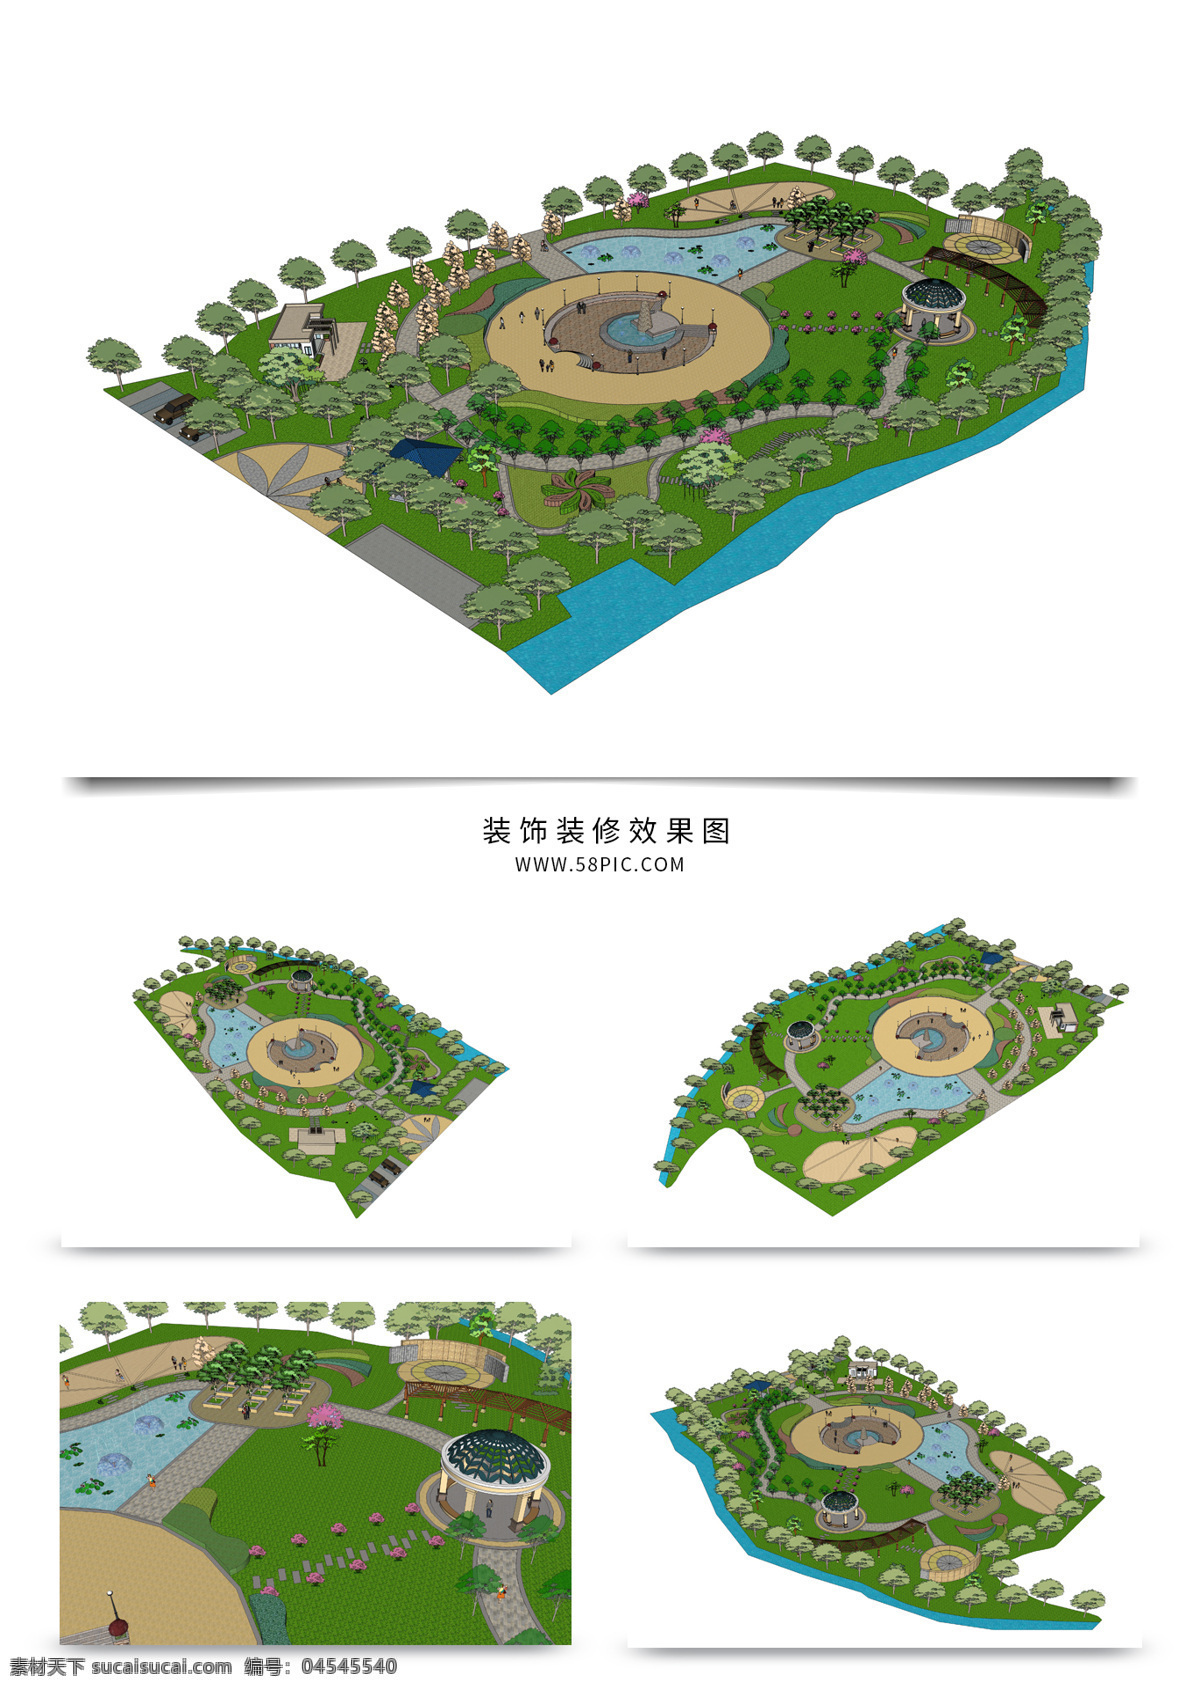 园林景观 su 透视 模型 园林 sketchup 草图 大师 景观规划 建筑装饰 设计素材 景观规划设计